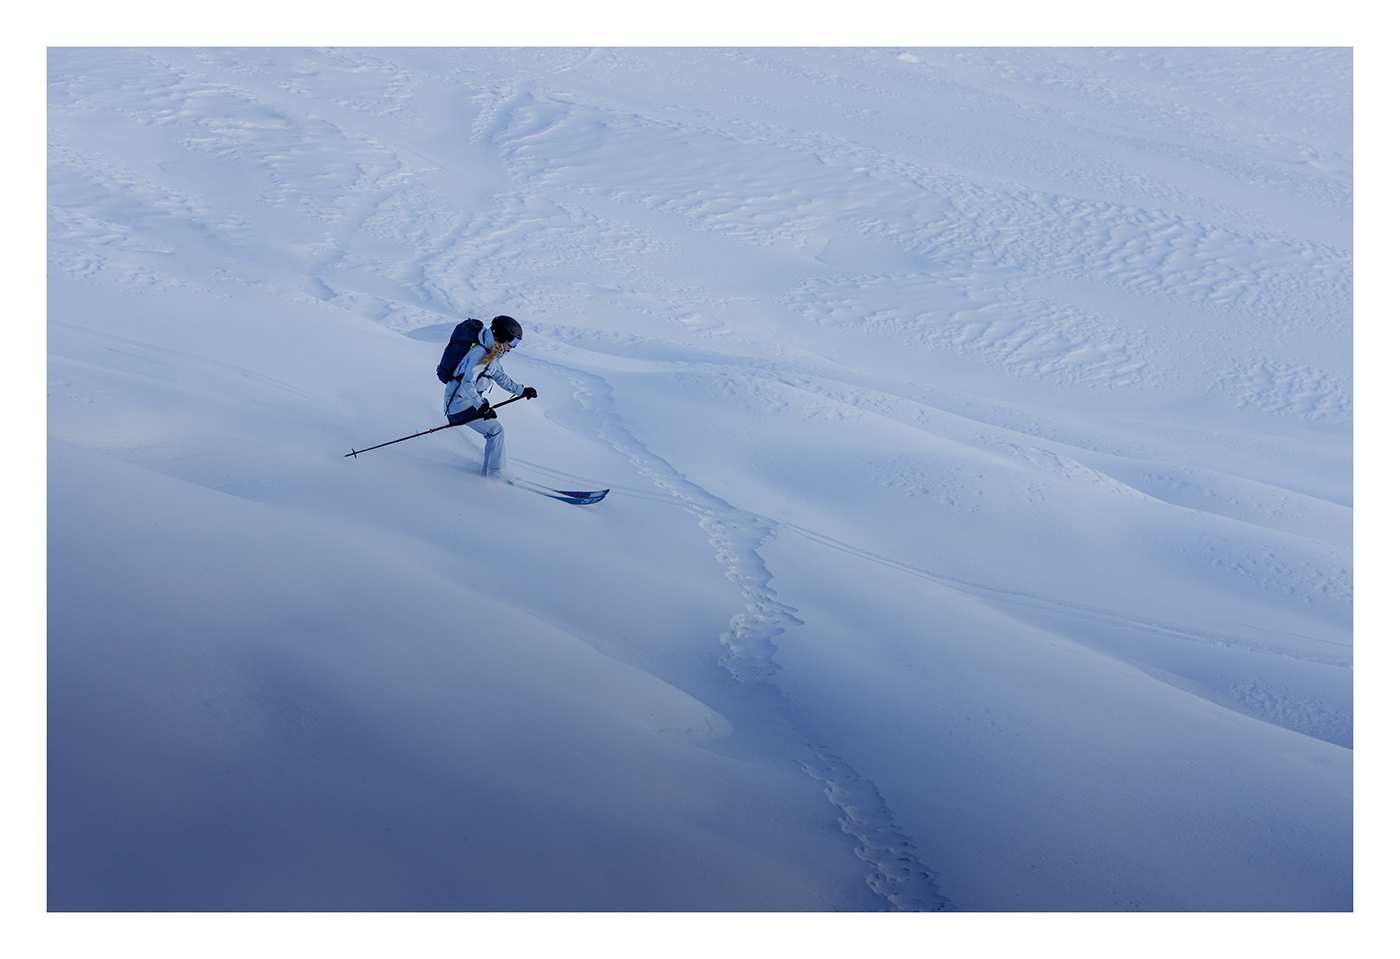 dolomites mountains outdoor advertising Photography  Ski Skimountaineering skitouring sport winter woman